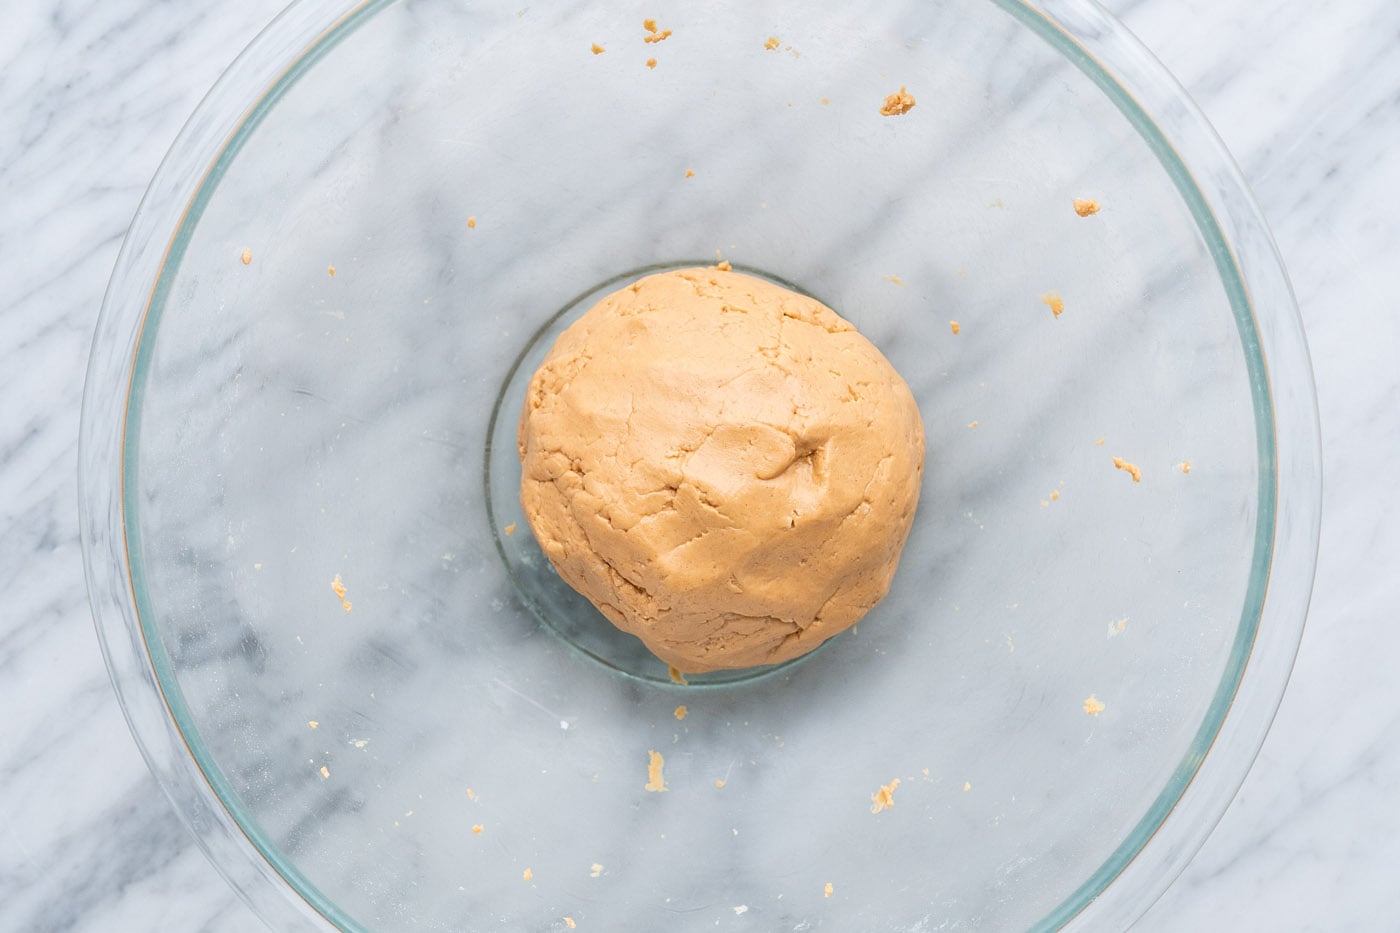 Peanut butter dough ball in a bowl